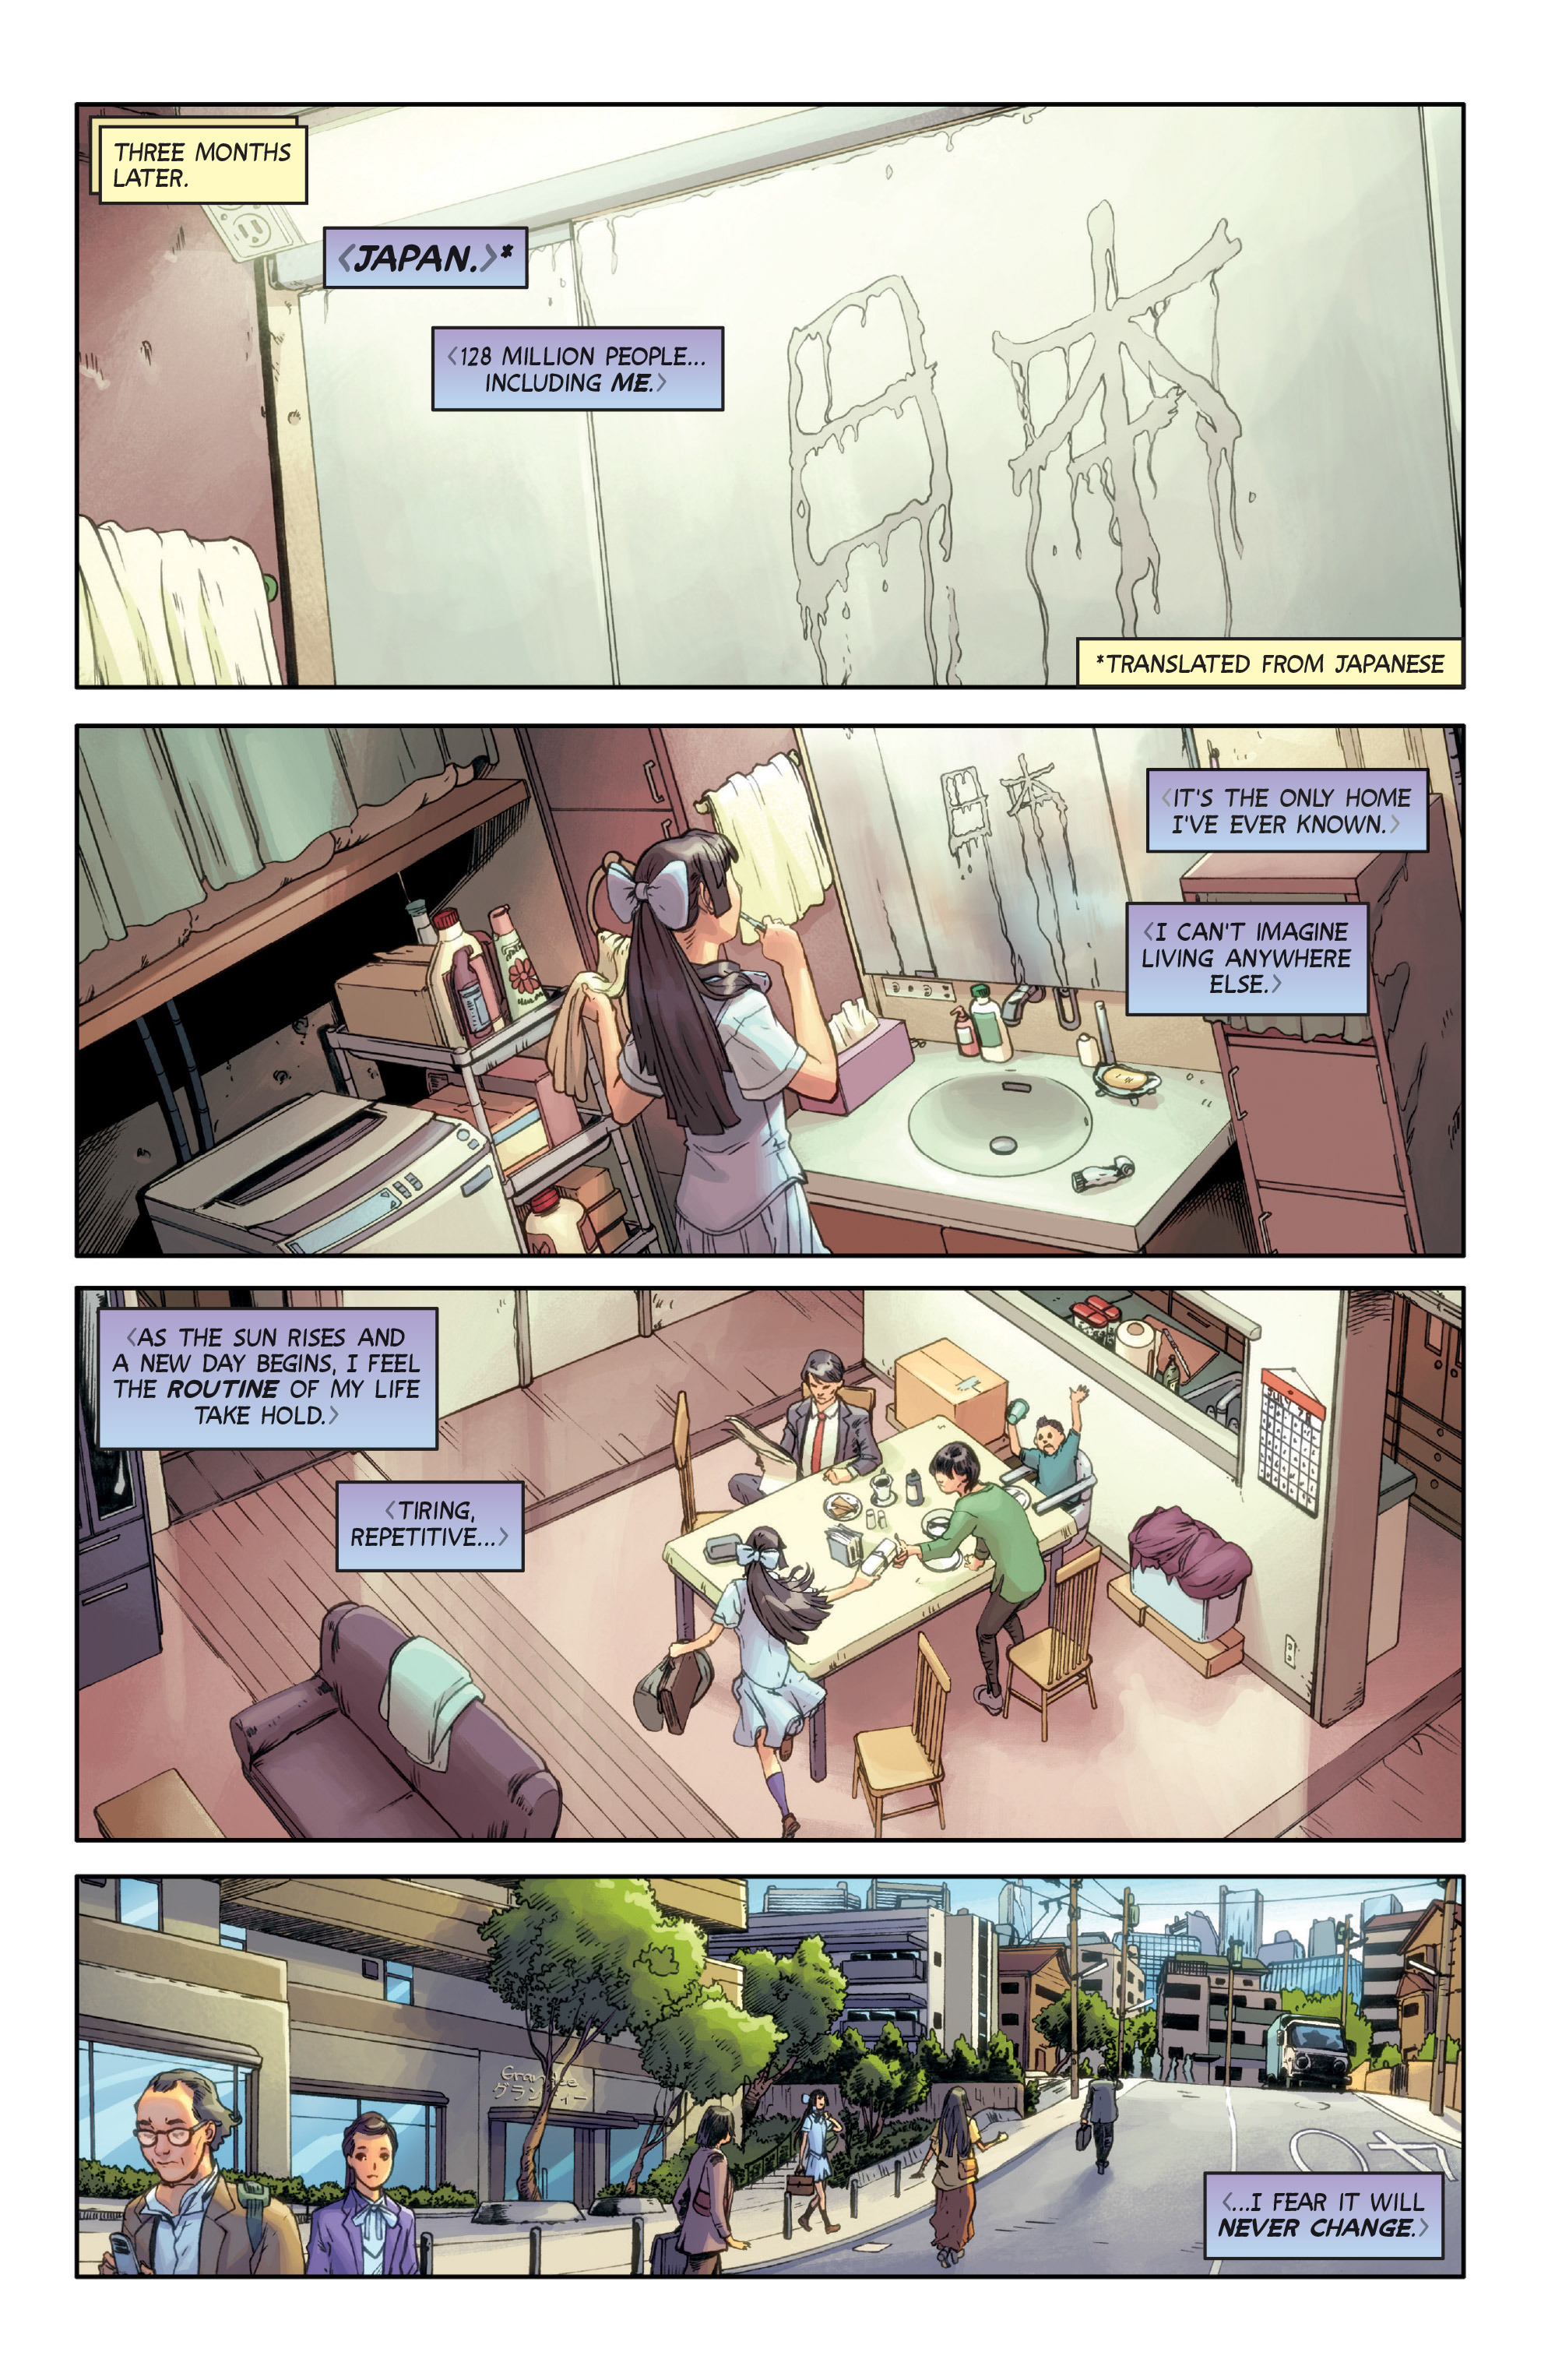 Wayward (2014-): Chapter 6 - Page 3